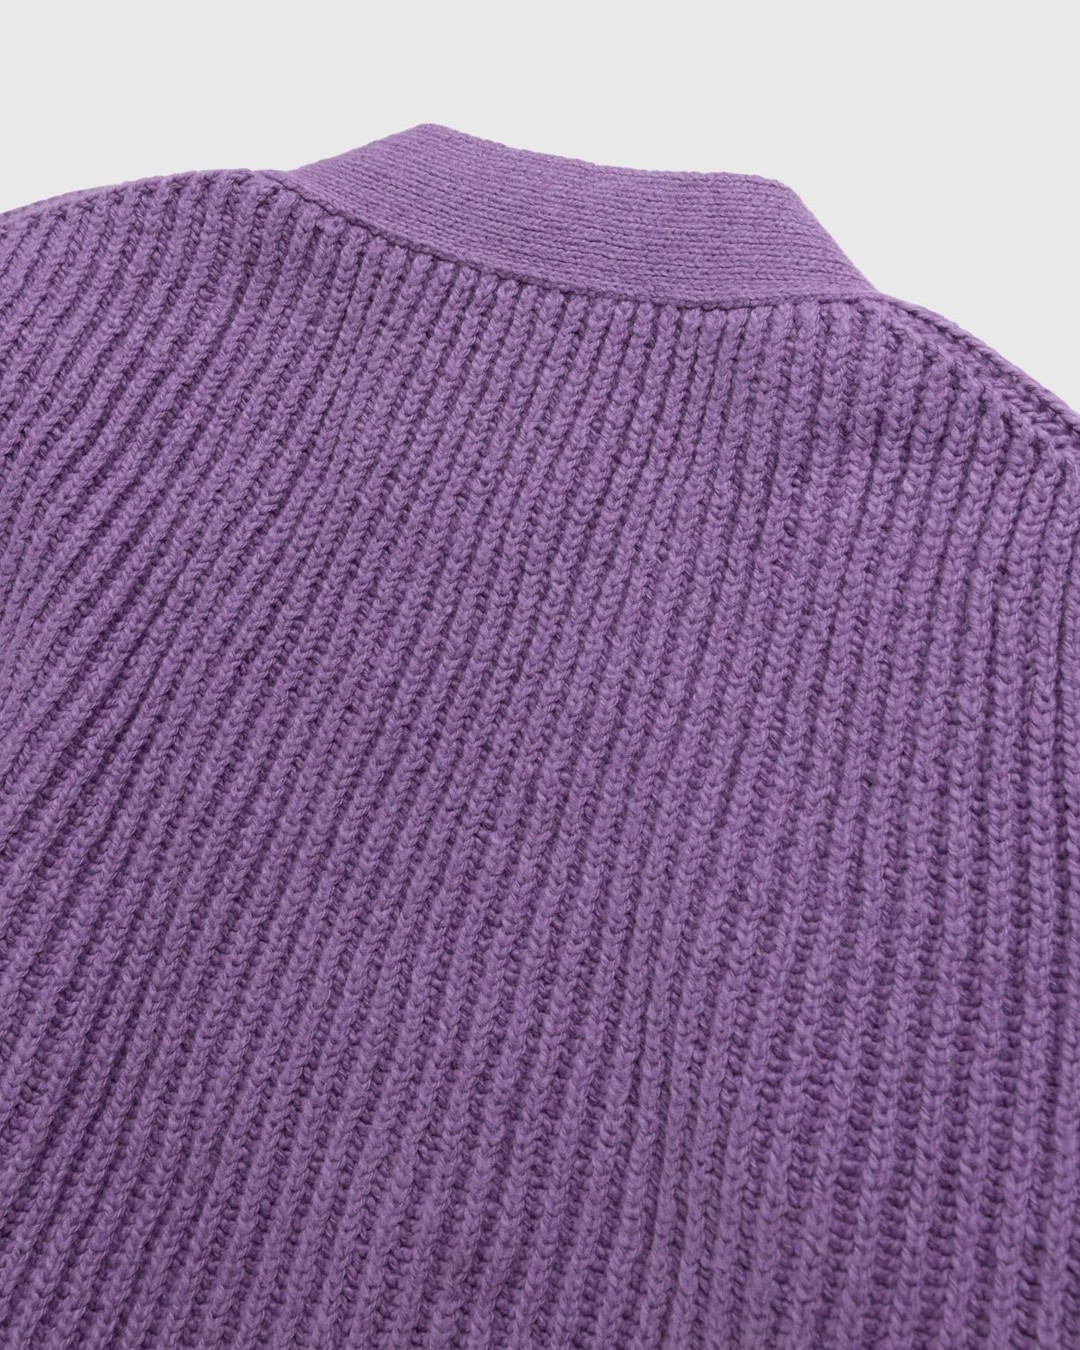 Jil Sander – Rib Knit Cardigan Medium Purple - Knitwear - Purple - Image 4